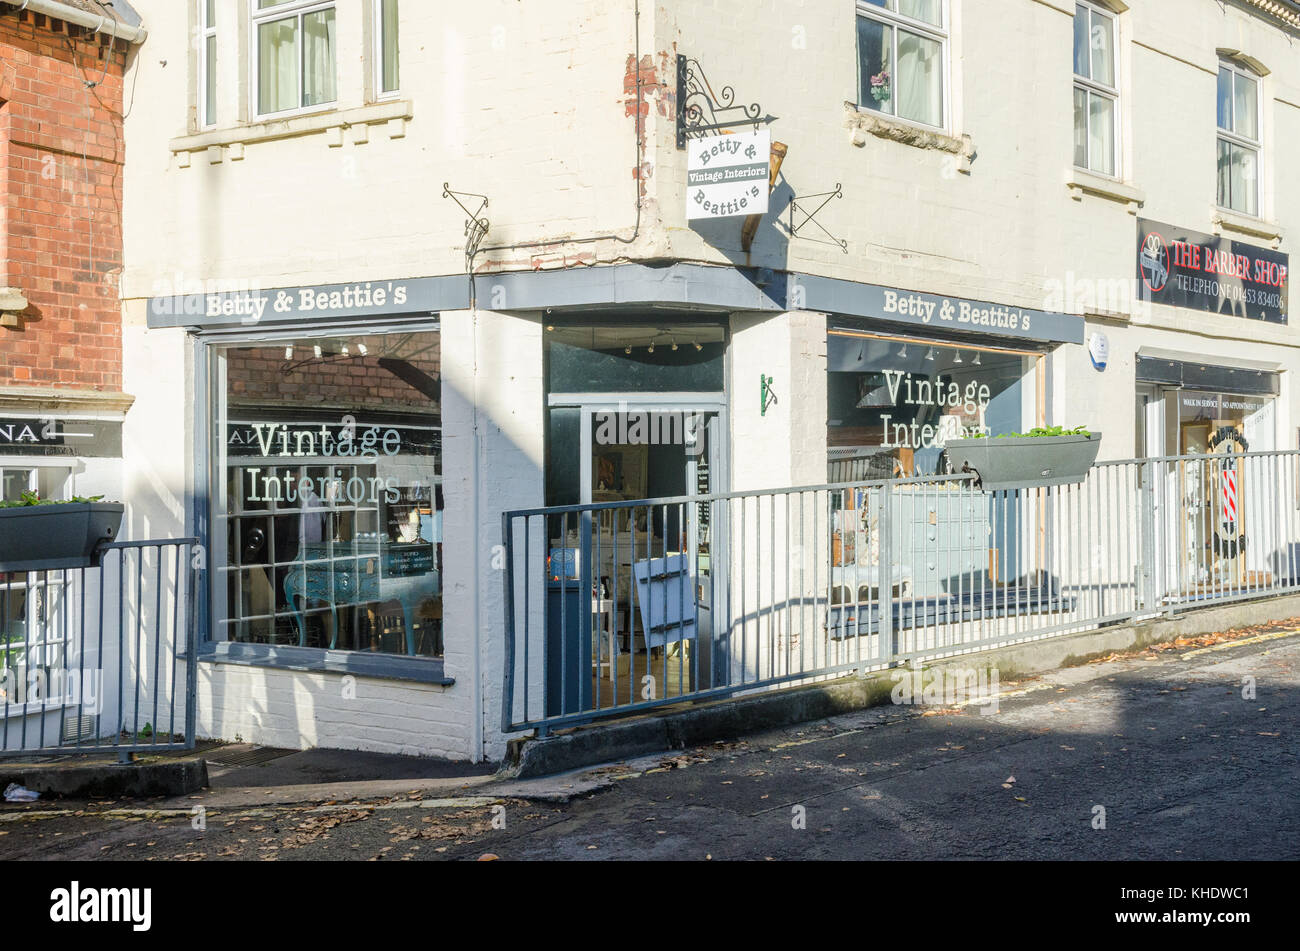 Betty und Beattie's Vintage Interieur Shop in der Market Street, Nailsworth, Gloucestershire Stockfoto